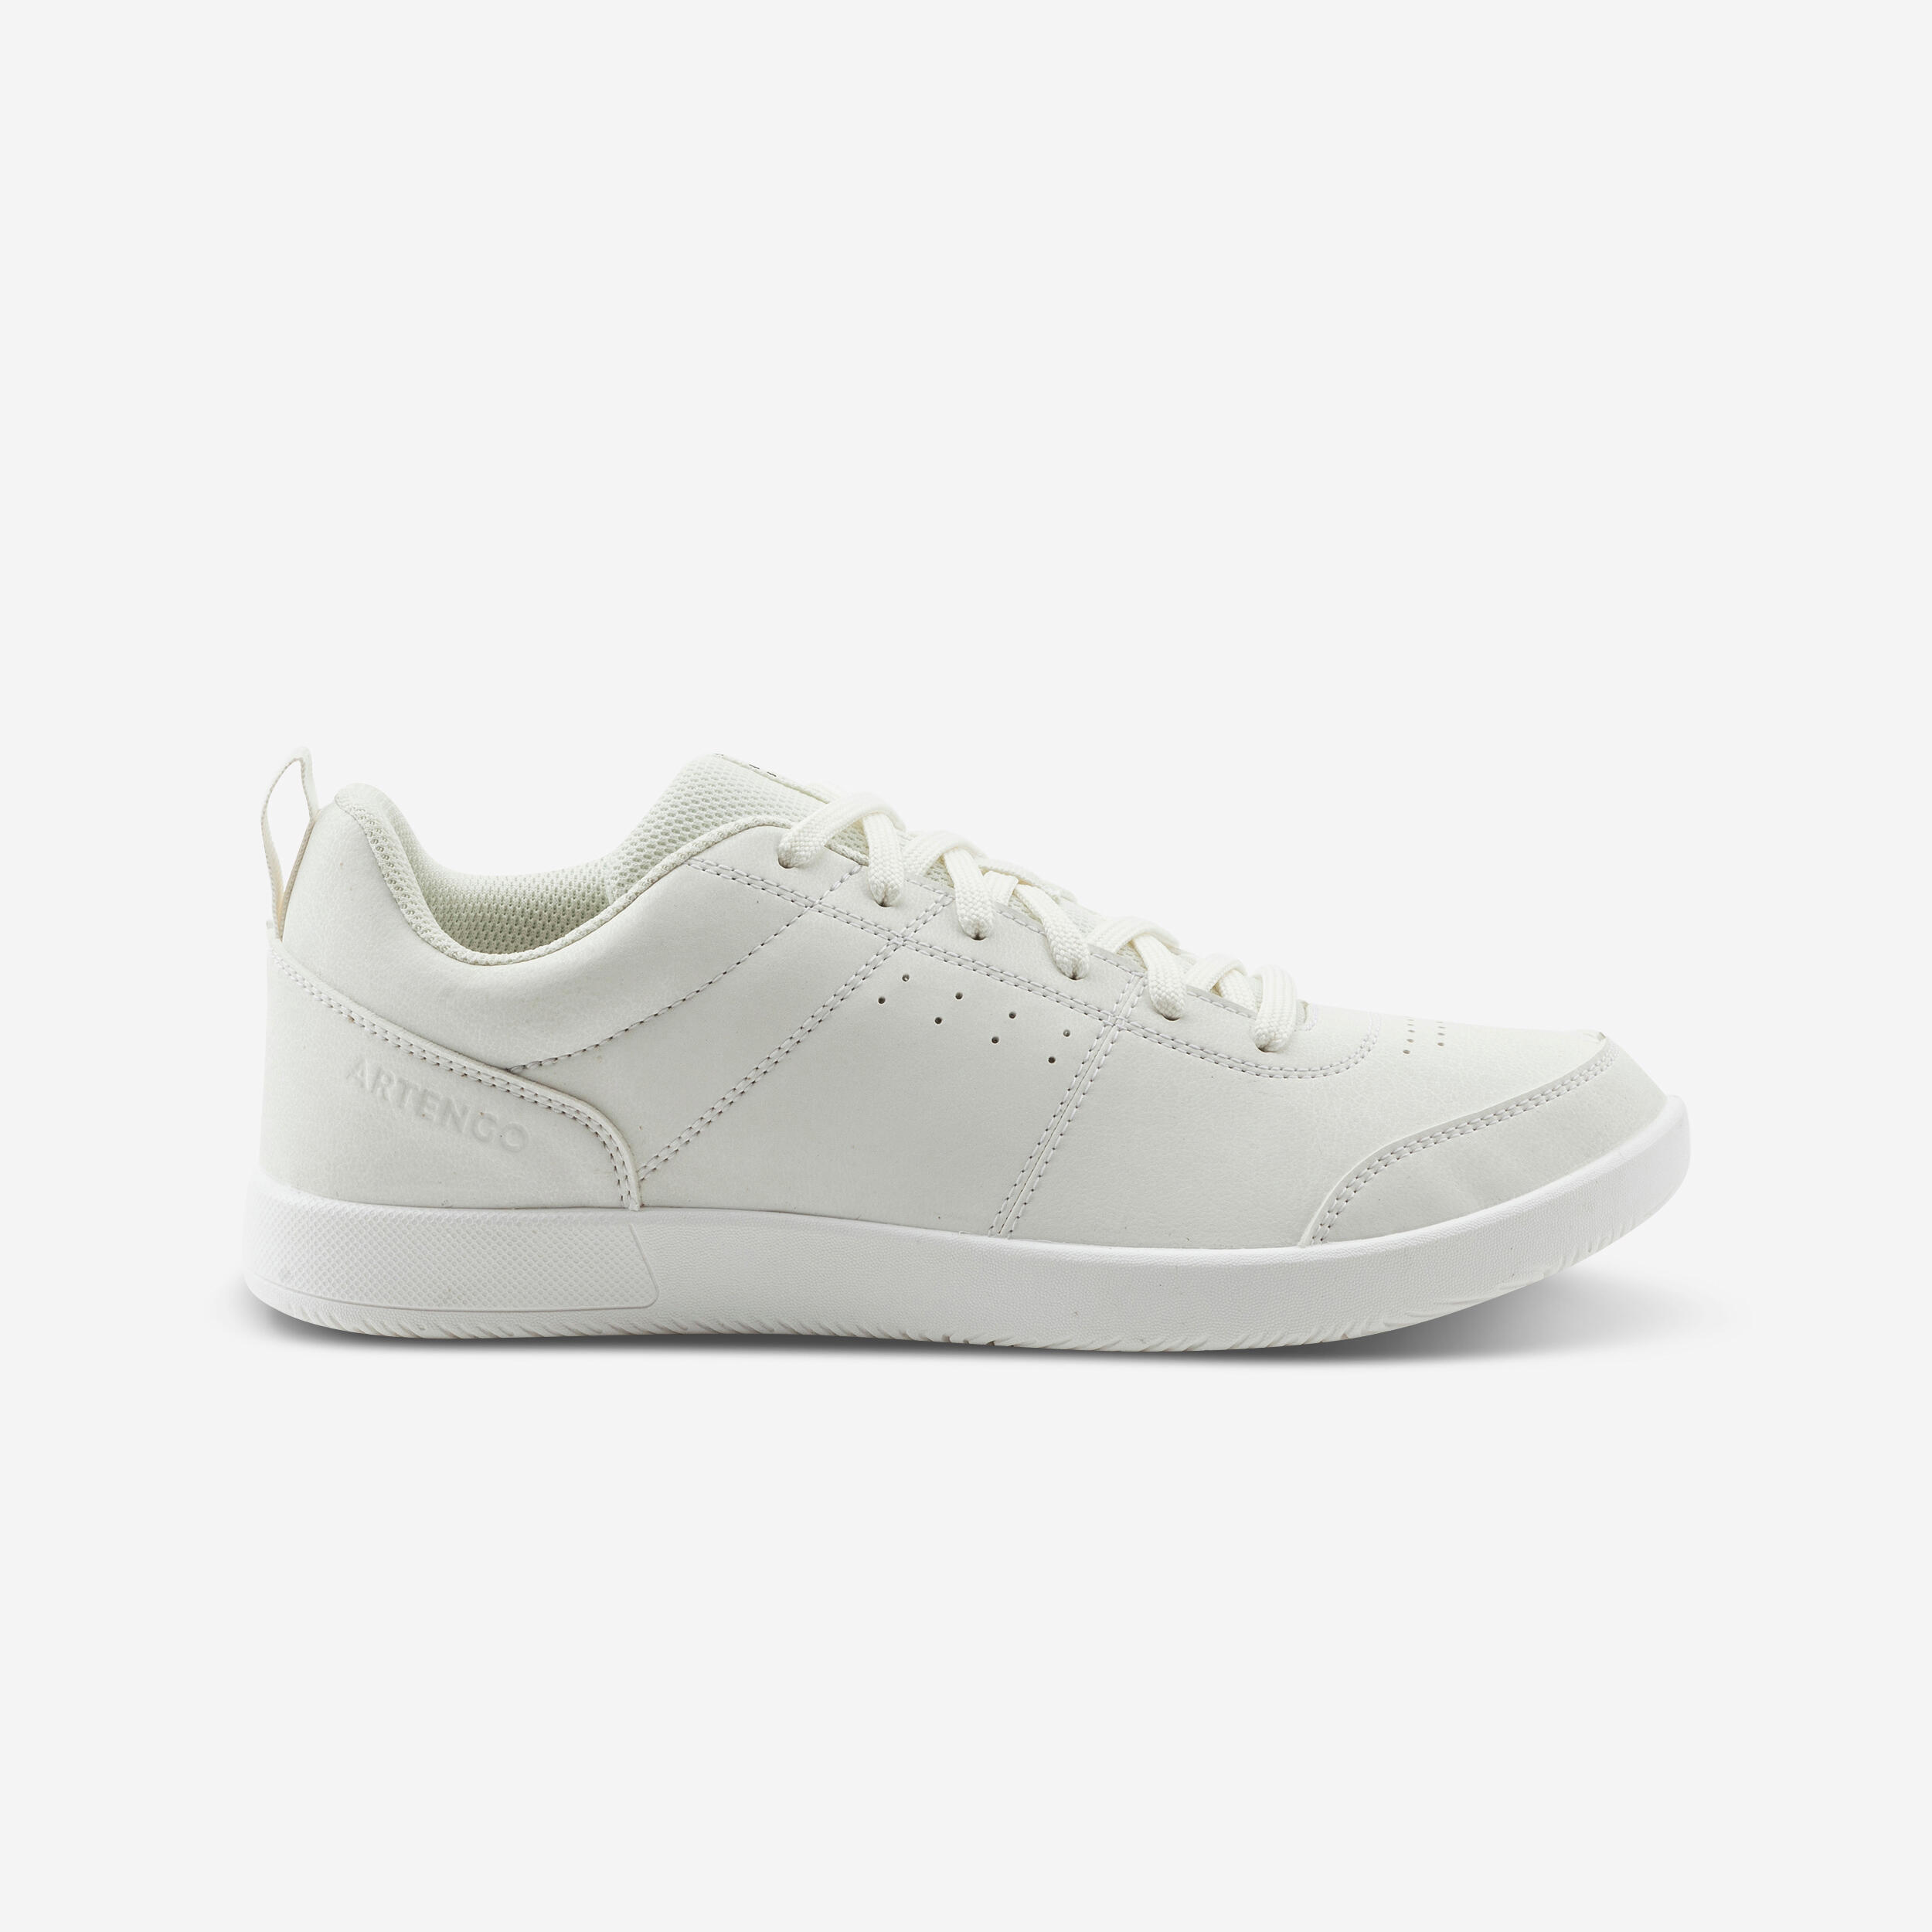 chaussures de tennis homme multicourt - essential blanc cassé - artengo